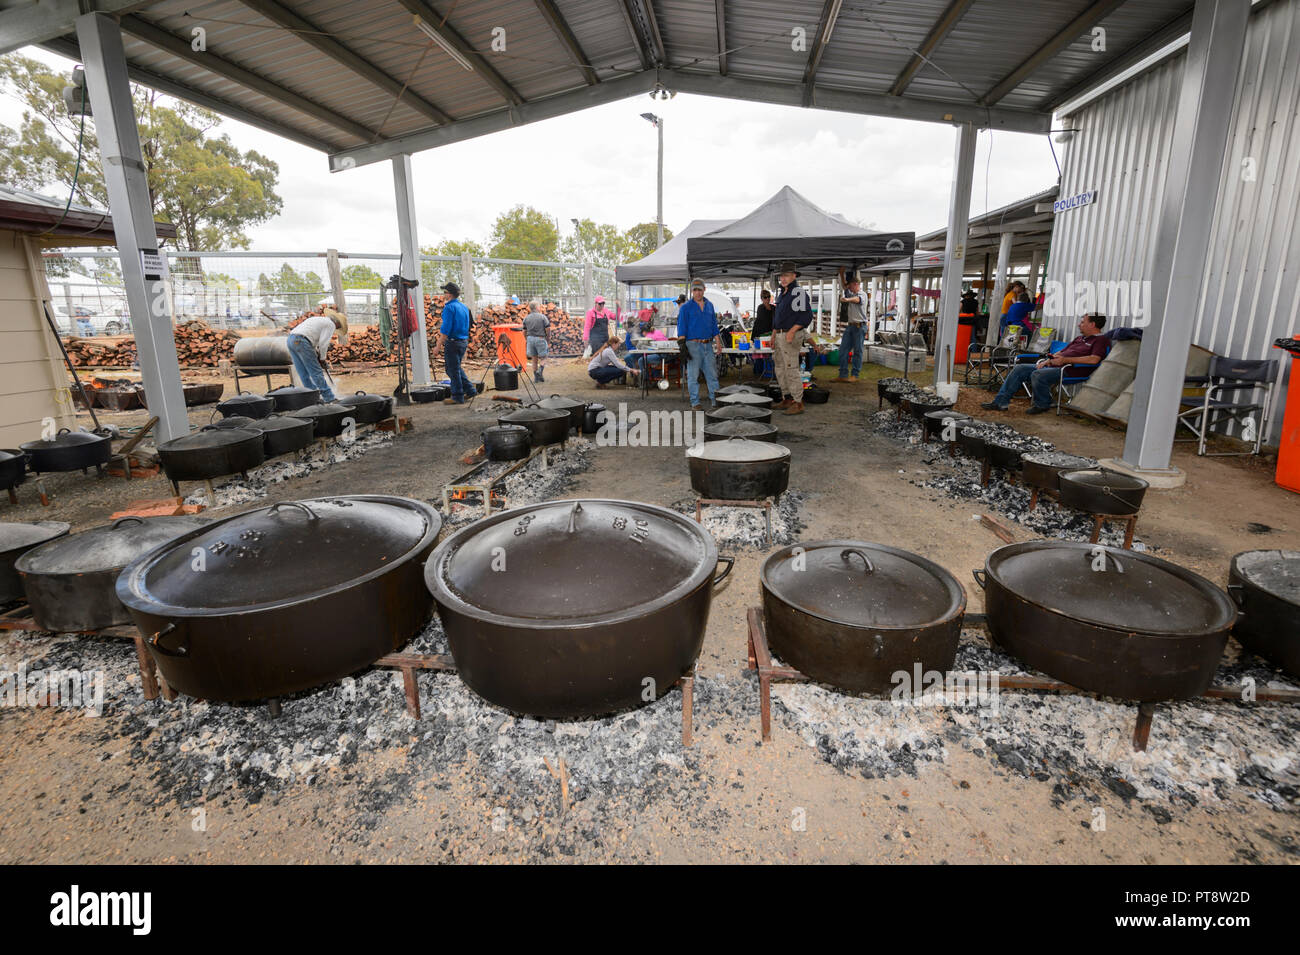 Chaudrons en fonte à l'Australian Camp Festival 2018 Millmerran, four, dans le sud du Queensland, Queensland, Australie Banque D'Images